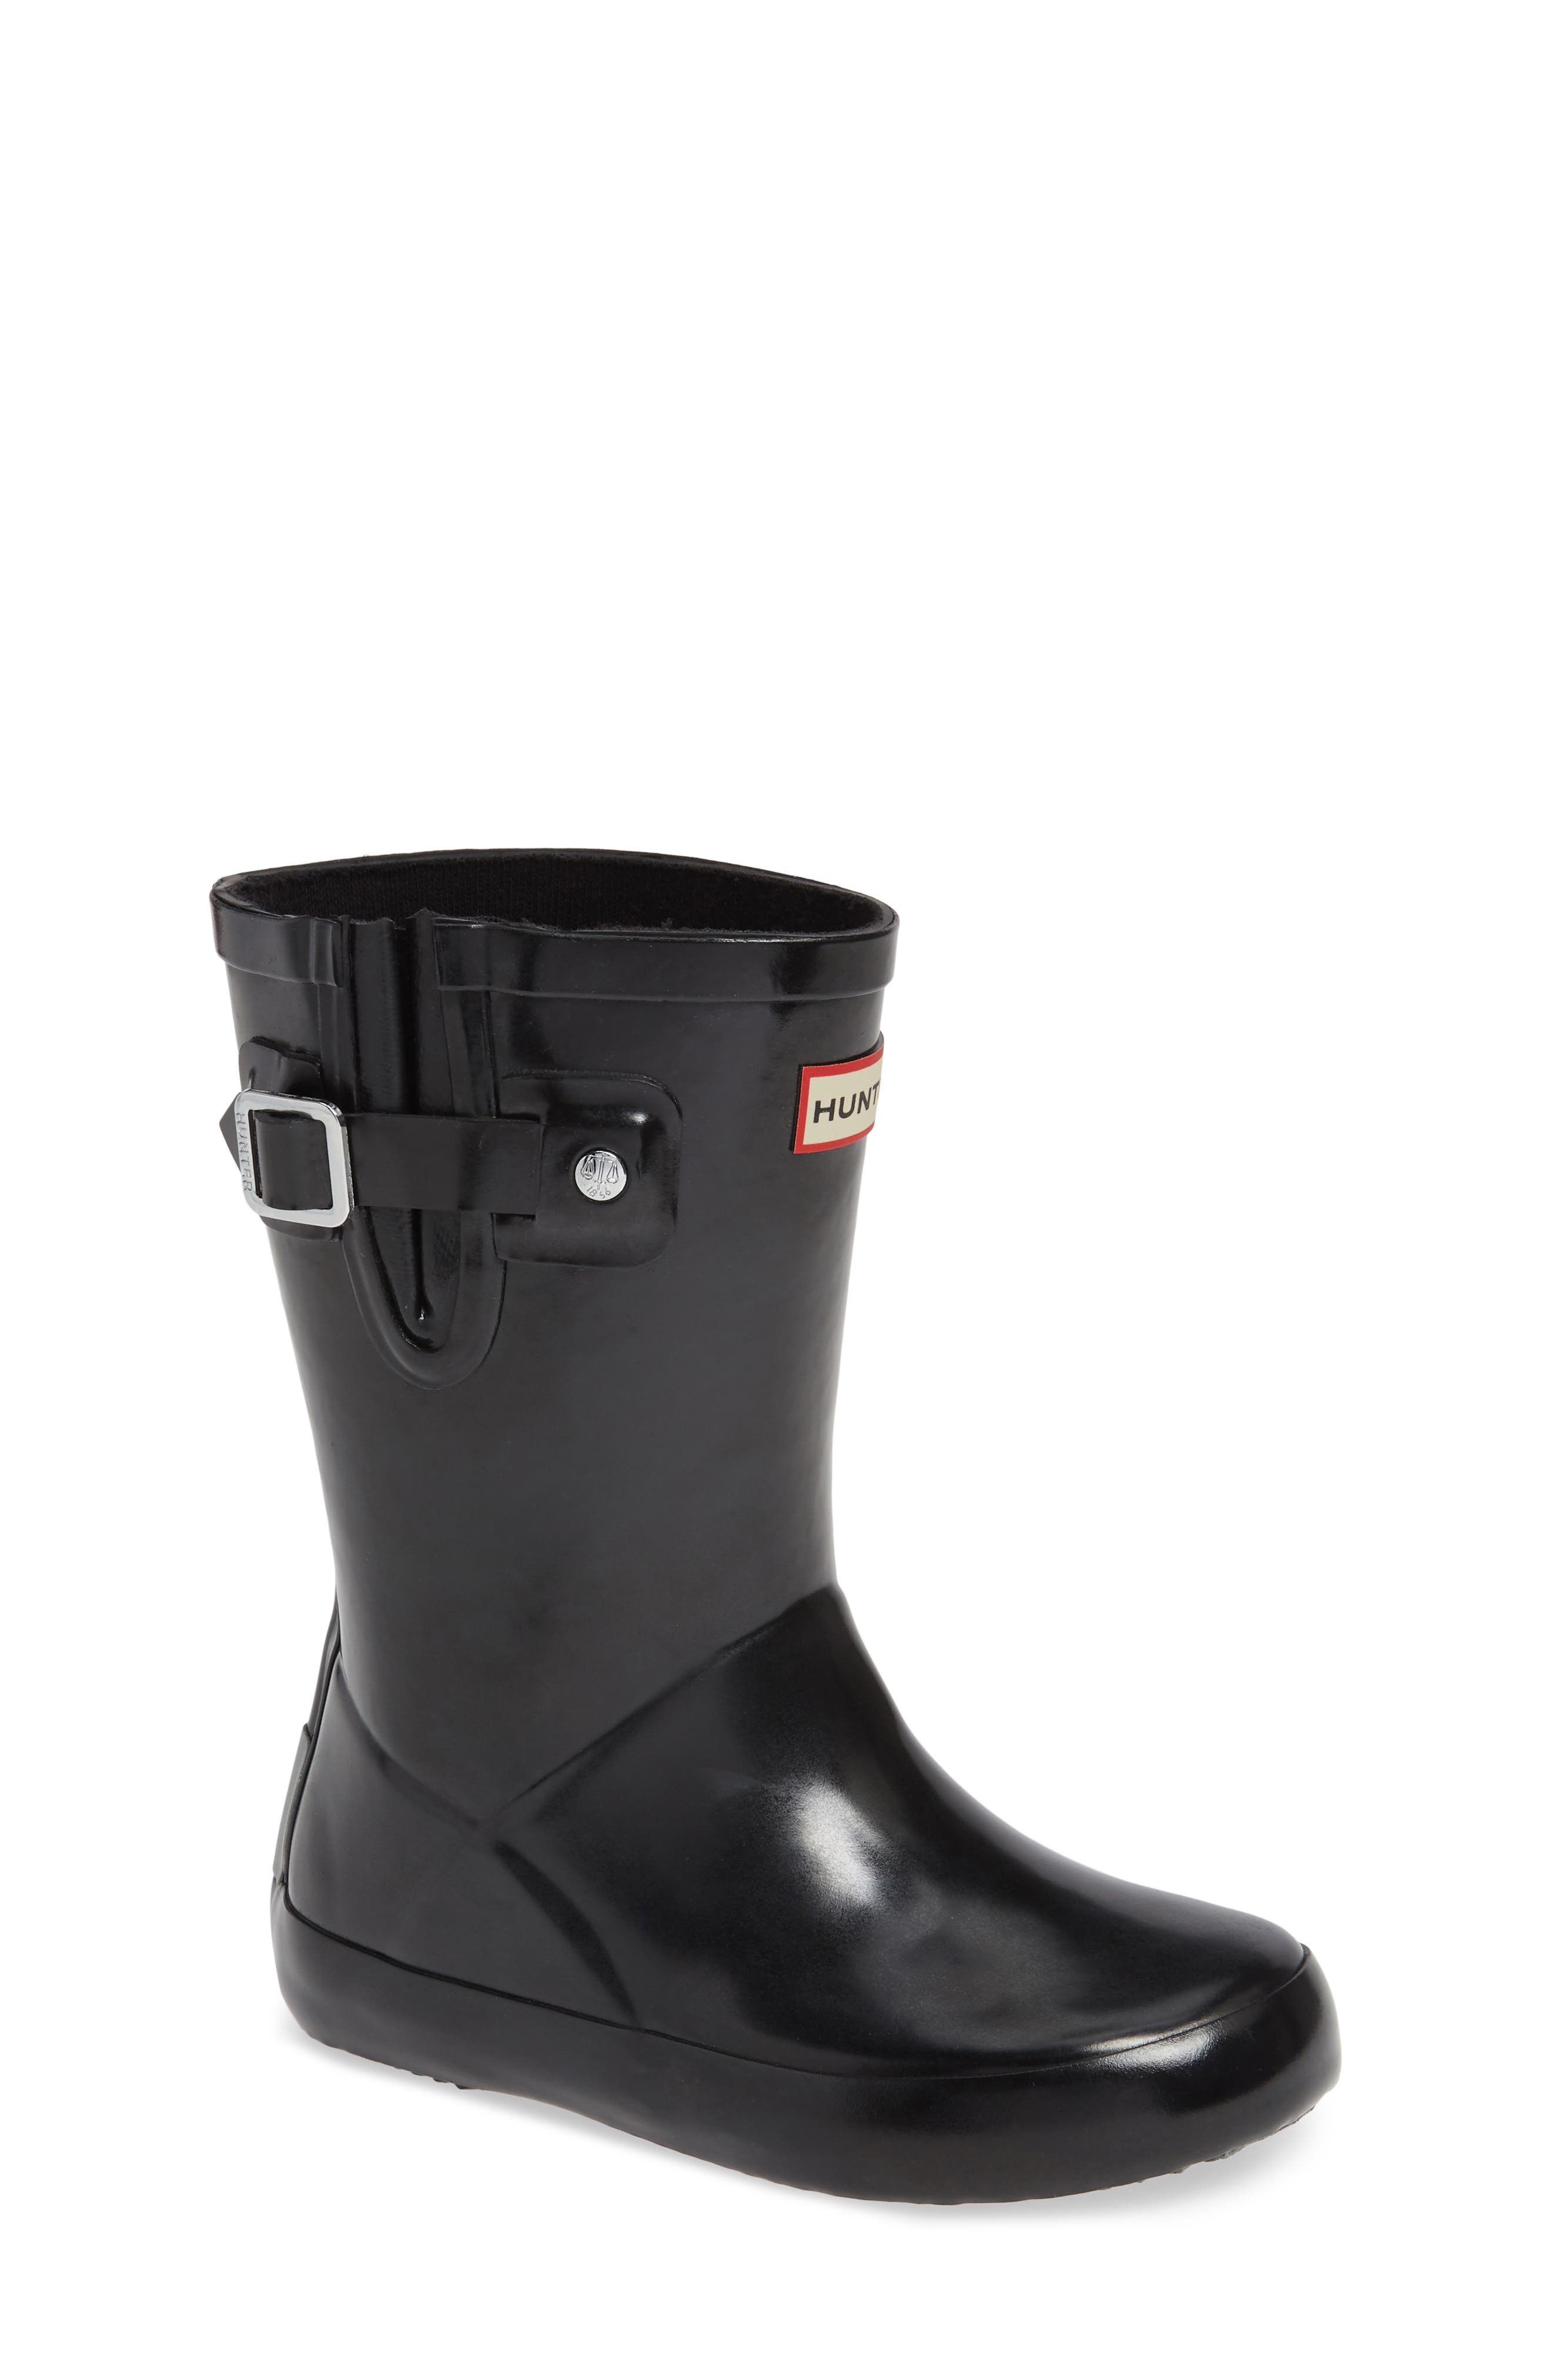 flat sole rain boots